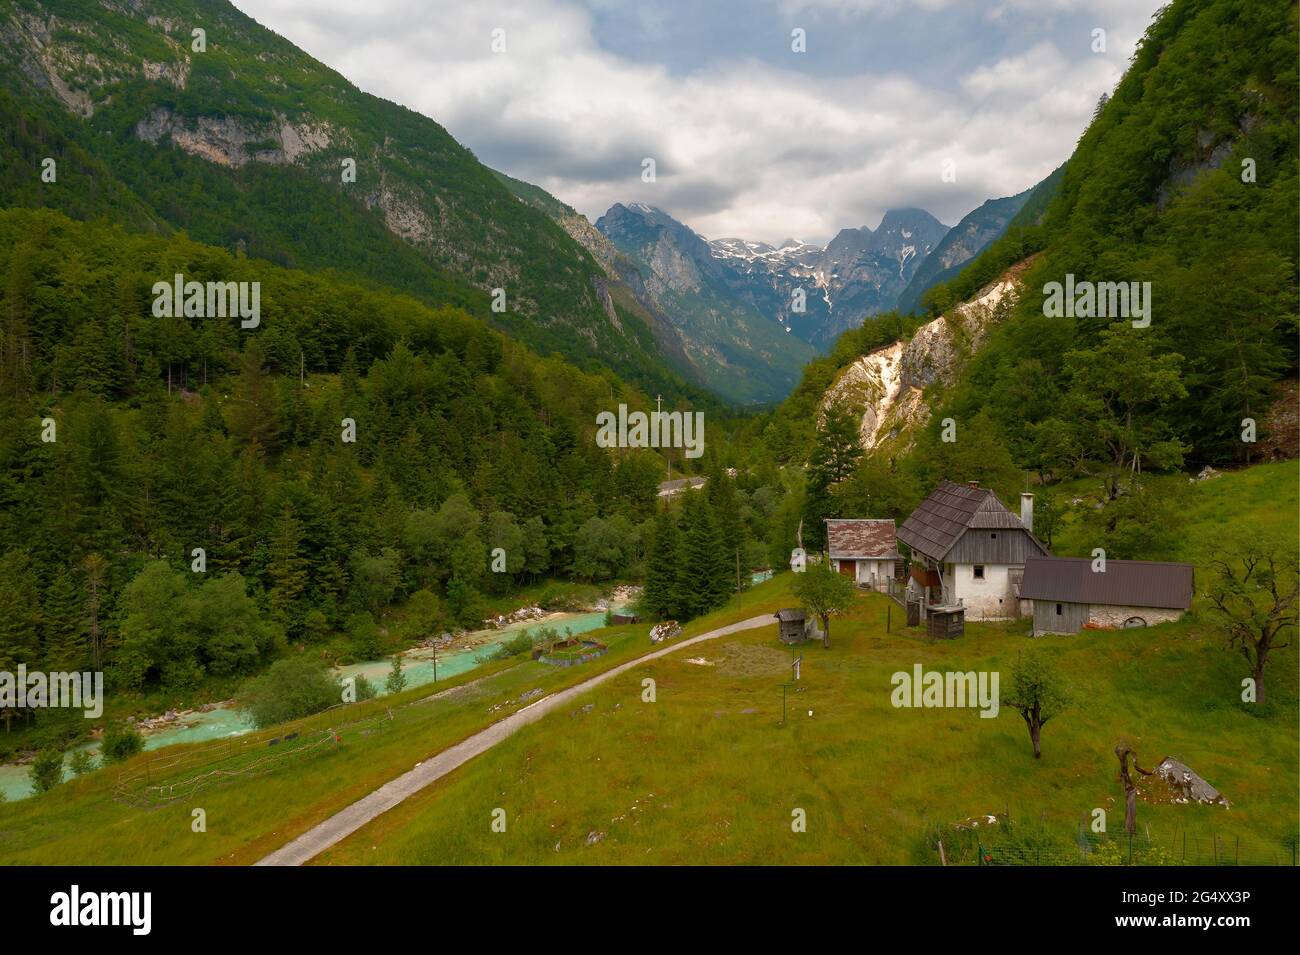 Traditionelles Haus im Soca-Tal Slowenien. Herrlicher Blick über das Soca-Tal im Triglav-Nationalpark Slowenien. Stockfoto